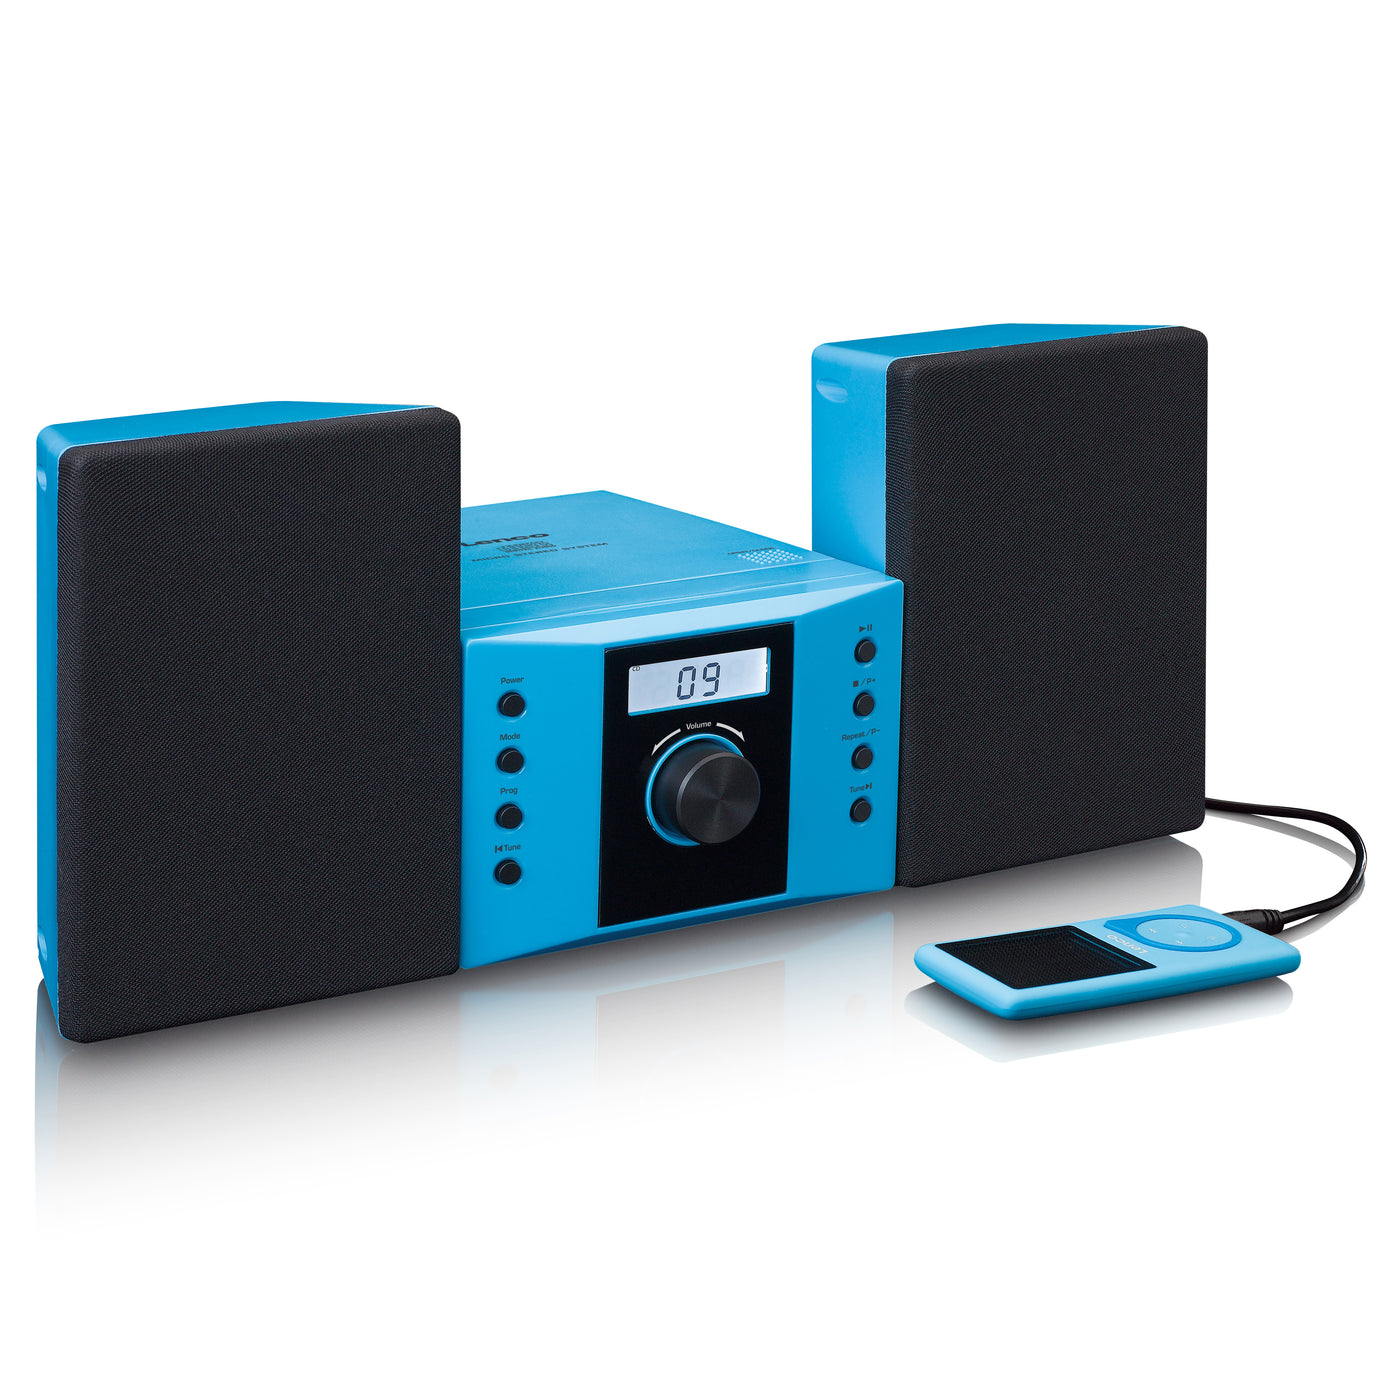 LENCO MC-013BU - Wieża stereo z radiem FM i odtwarzaczem CD - Niebieski